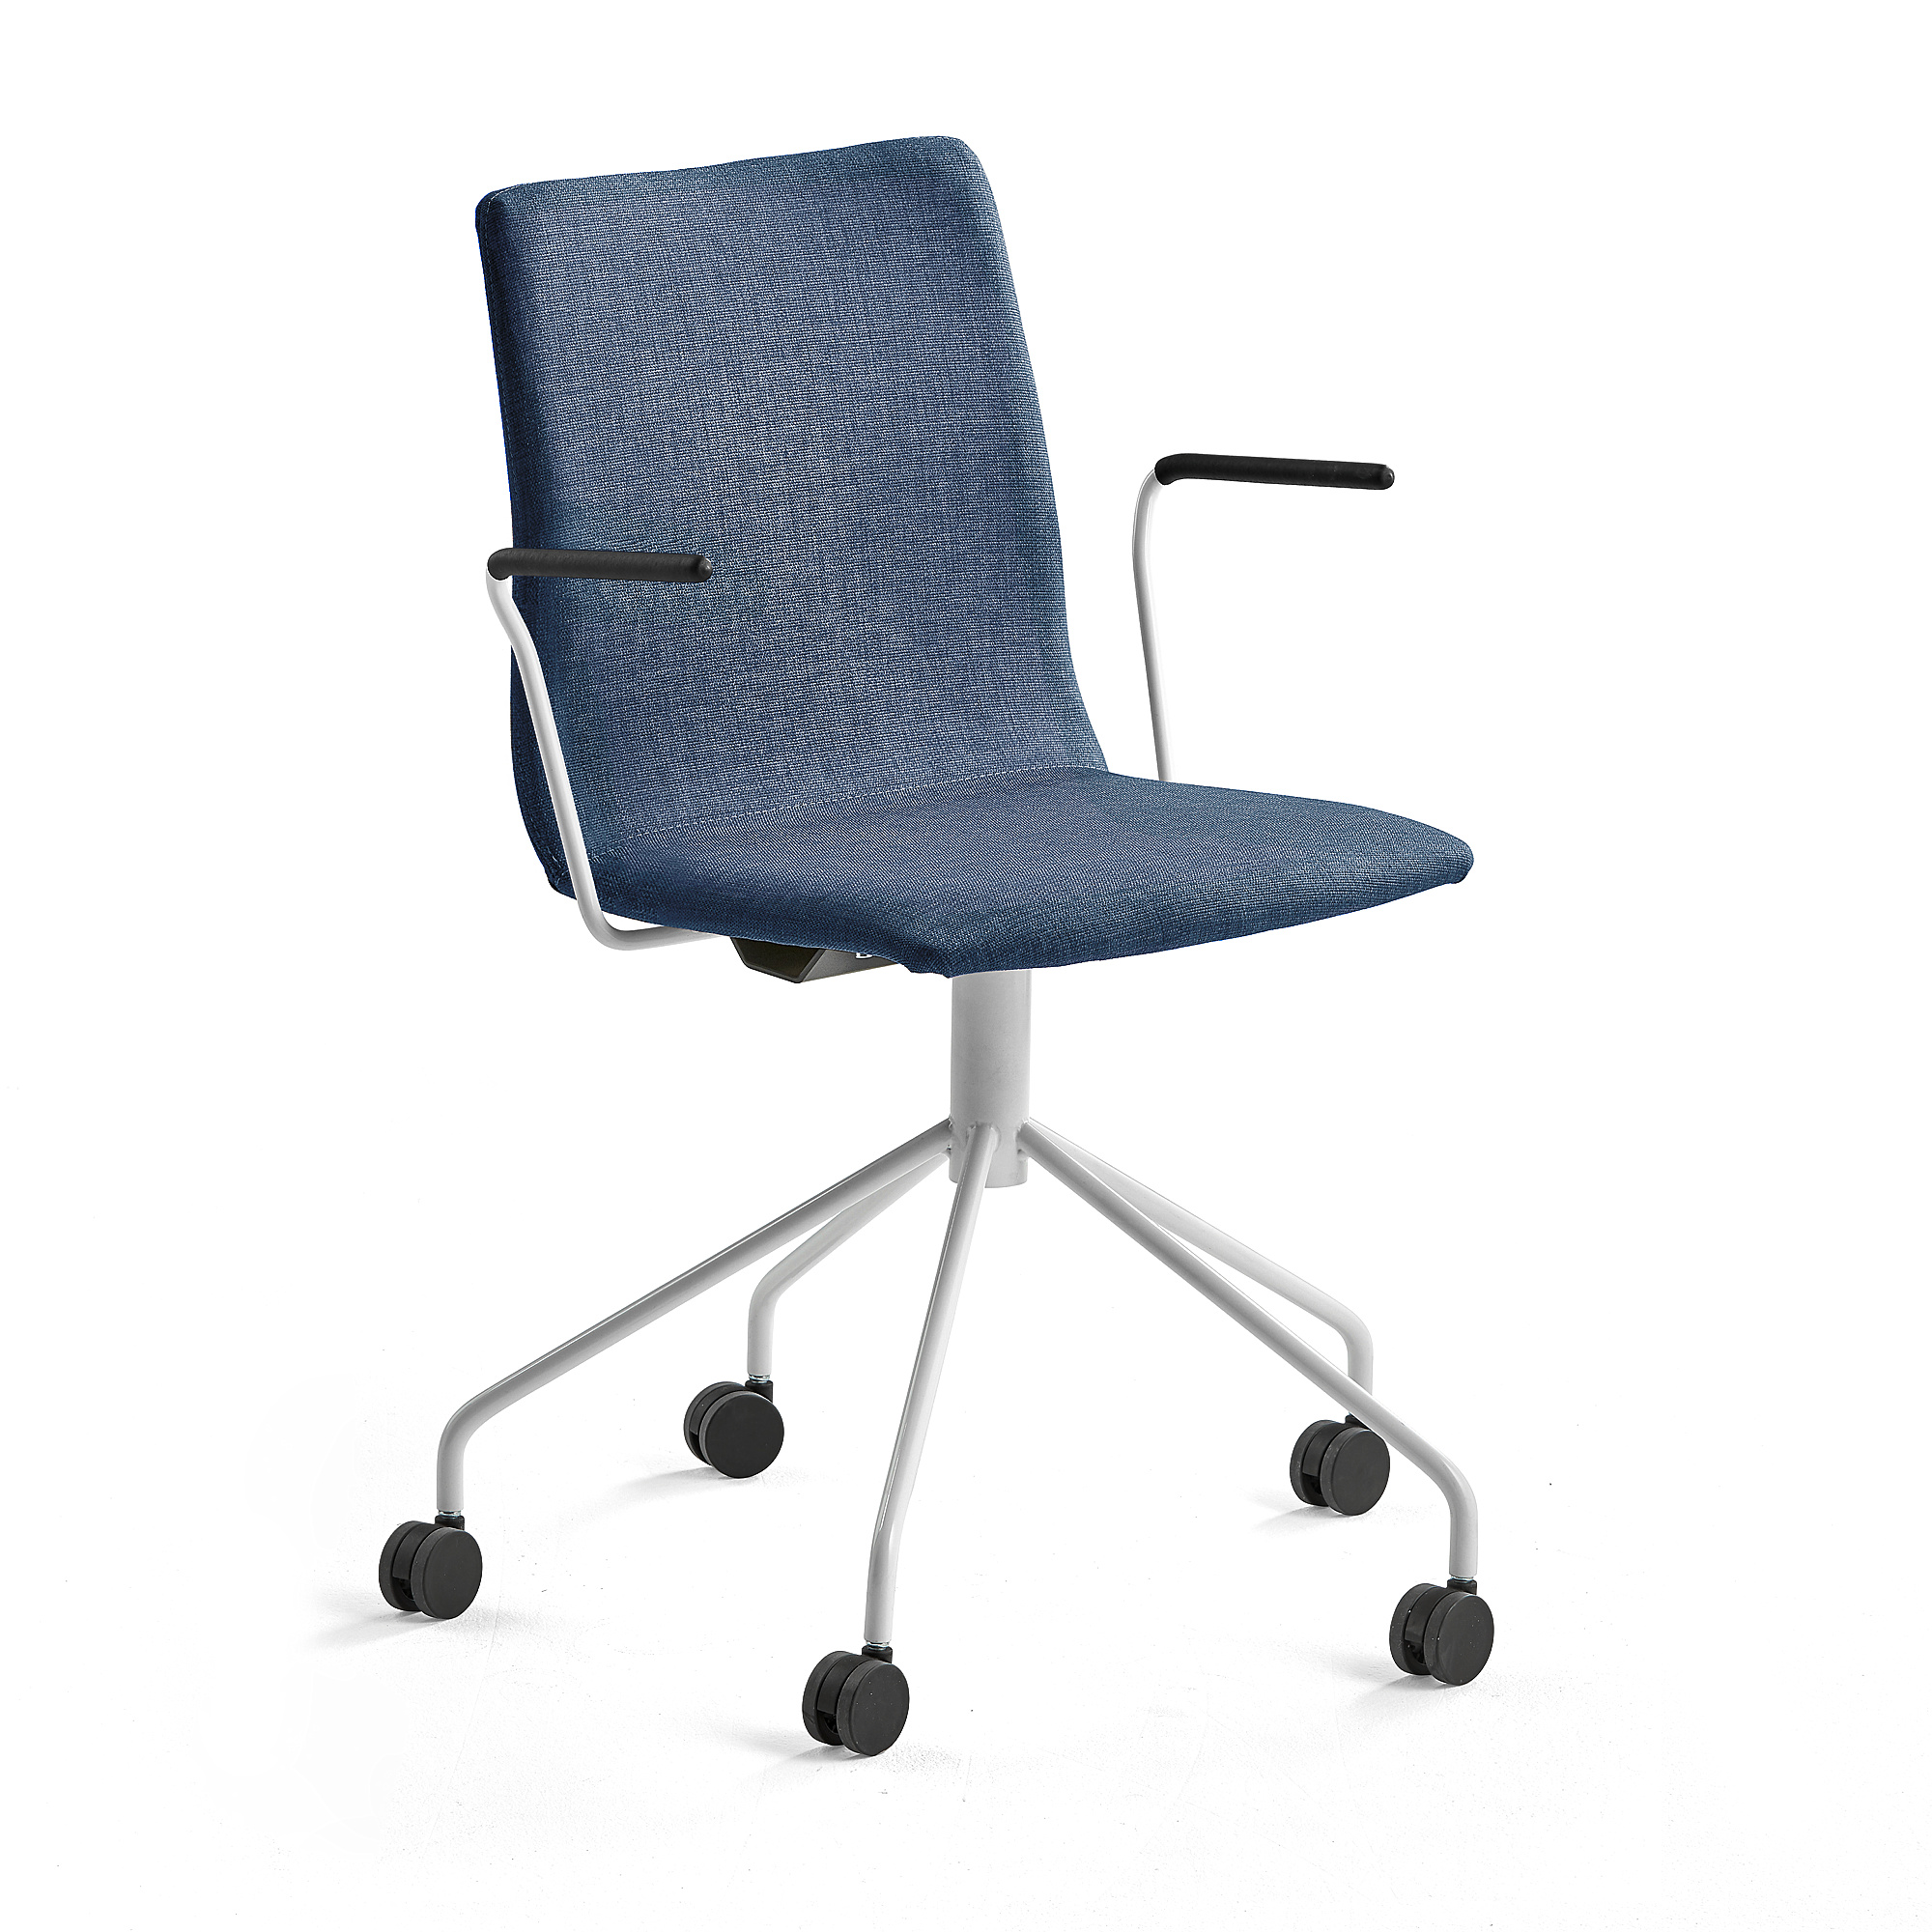 Konferenčná stolička OTTAWA, s kolieskami a opierkami rúk, modrá/biela